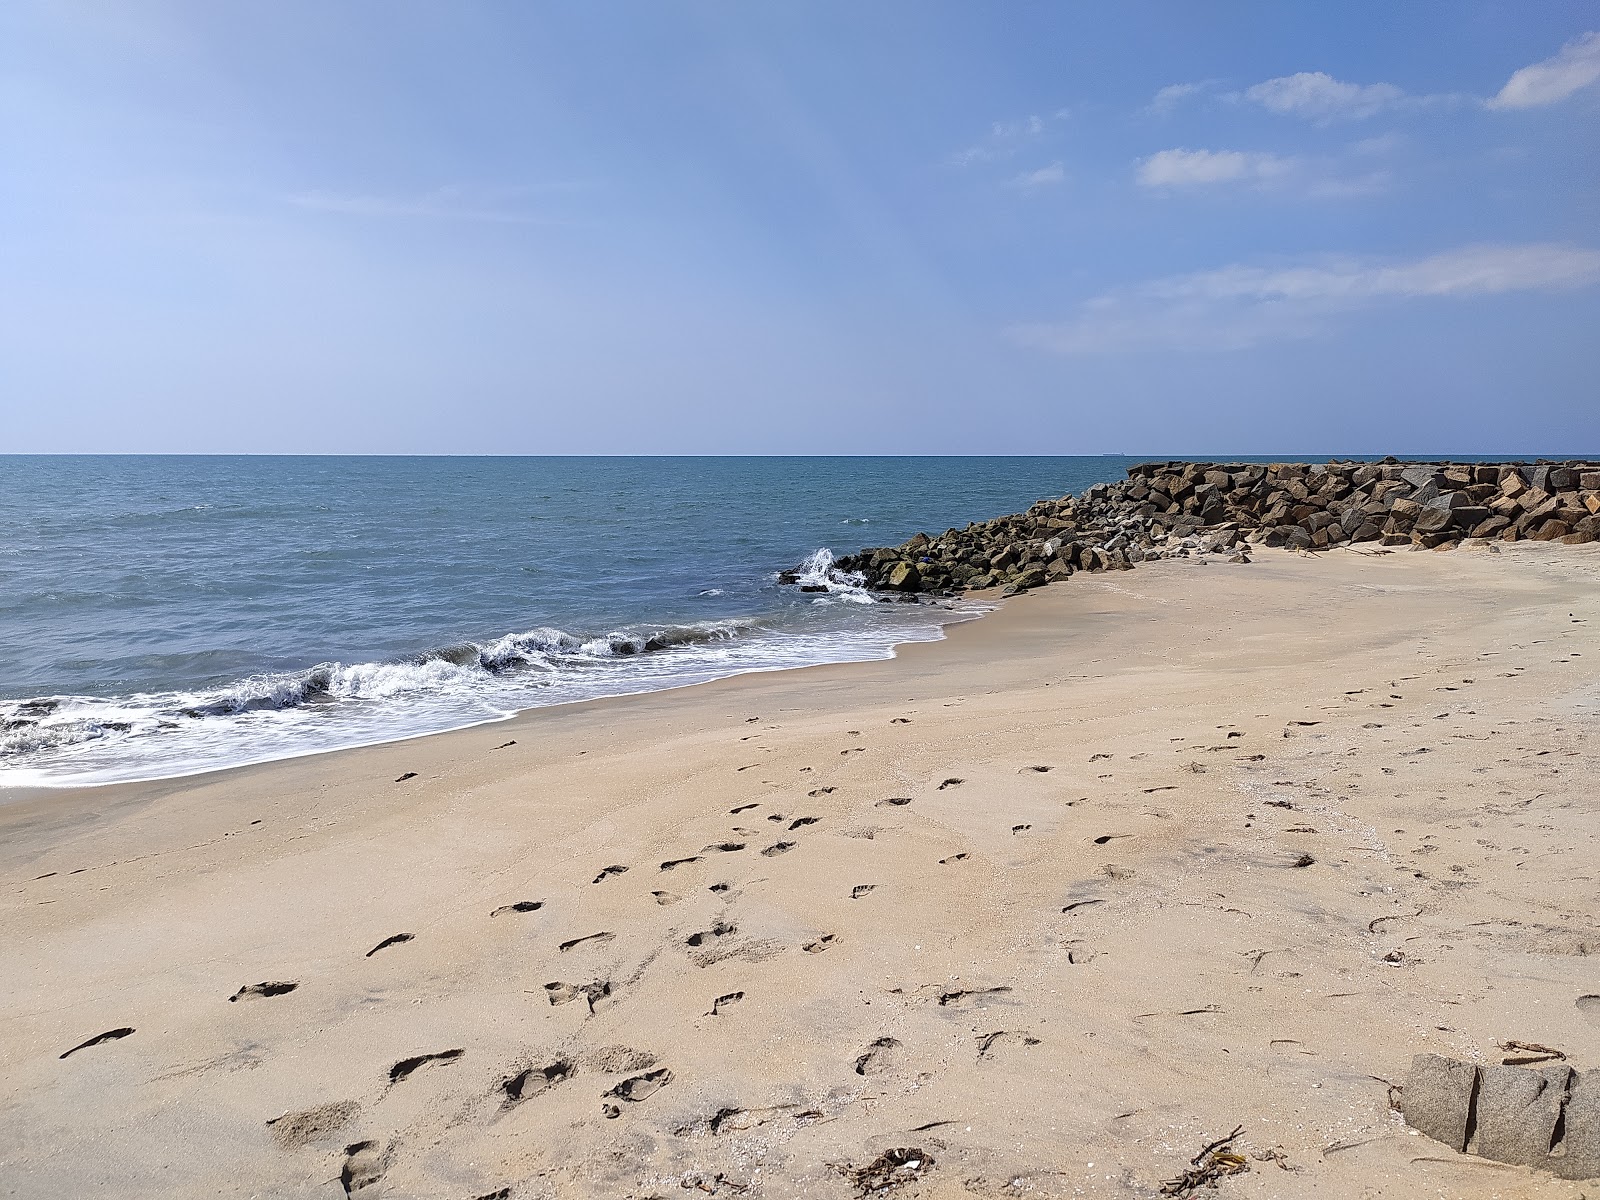 Fotografie cu Aniyal Beach - locul popular printre cunoscătorii de relaxare